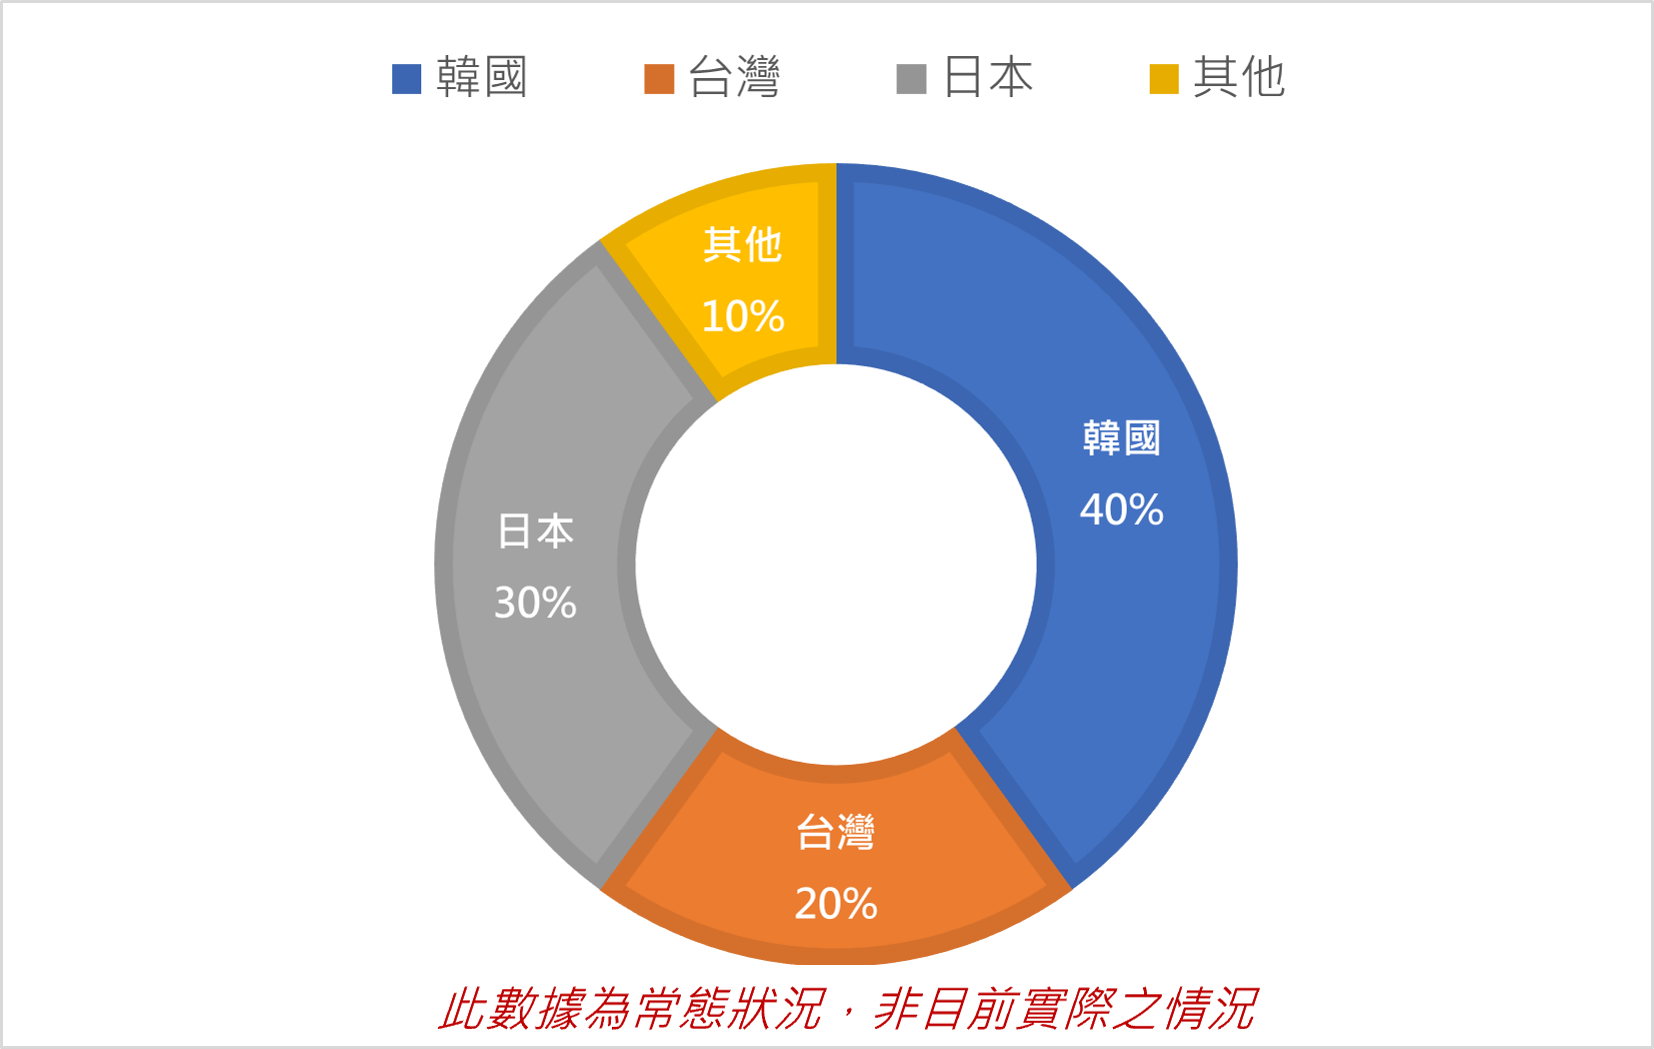 CG BANILAD校內學生國籍比例為:韓國40%,台灣20%,日本30%,其它國家10%，但此數據統計為常態狀況，非目前實際之數據